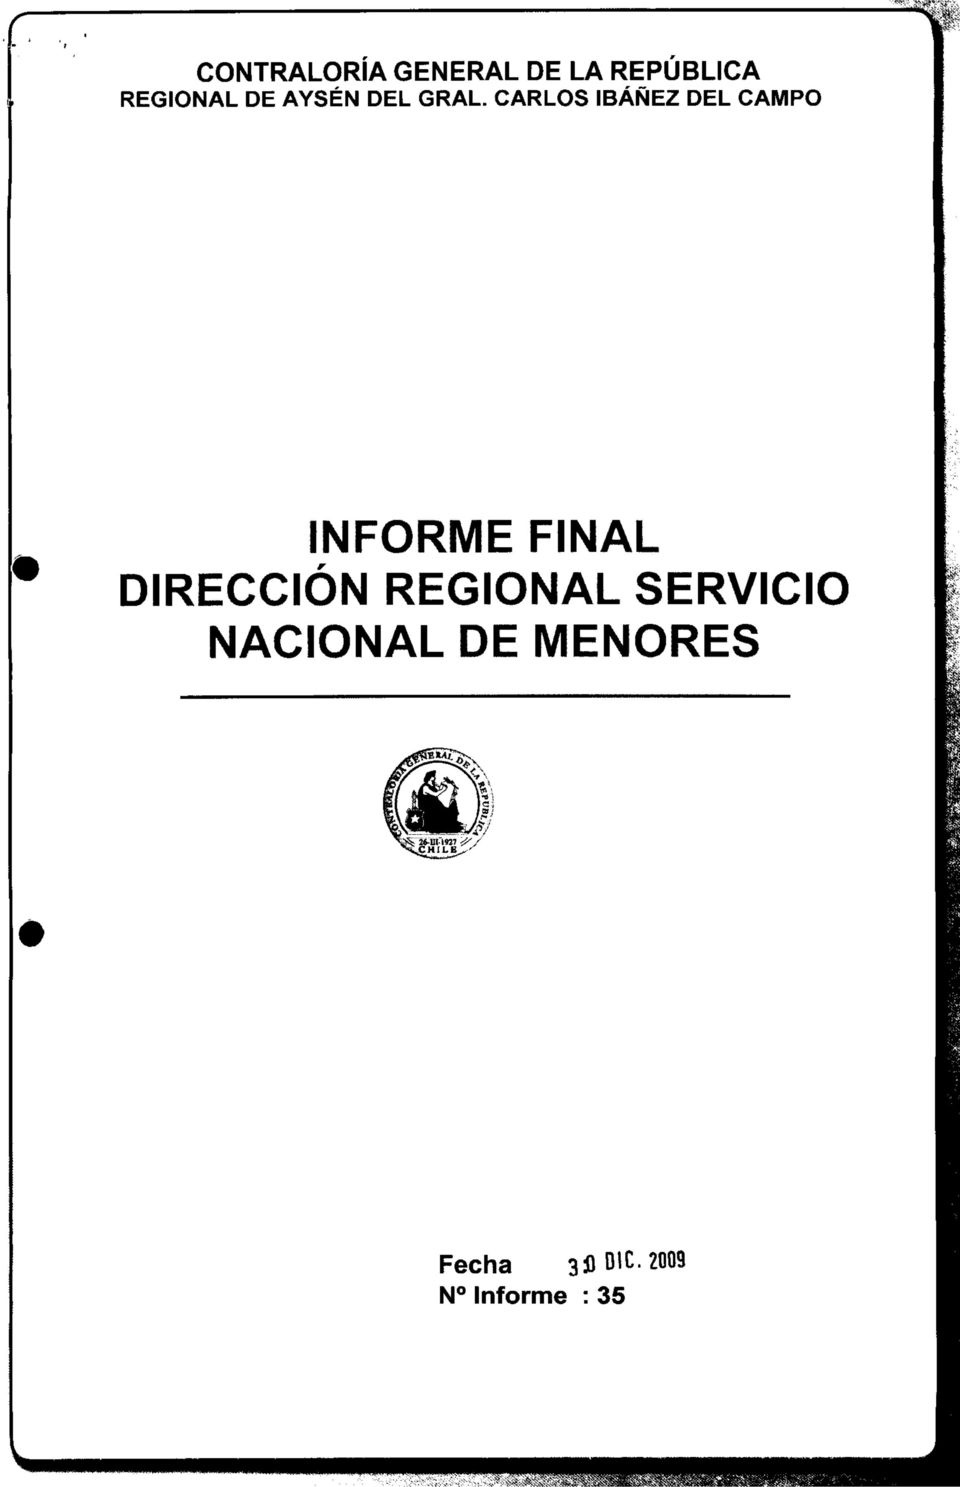 FINAL DIRECCIÓN REGIONAL SERVICIO